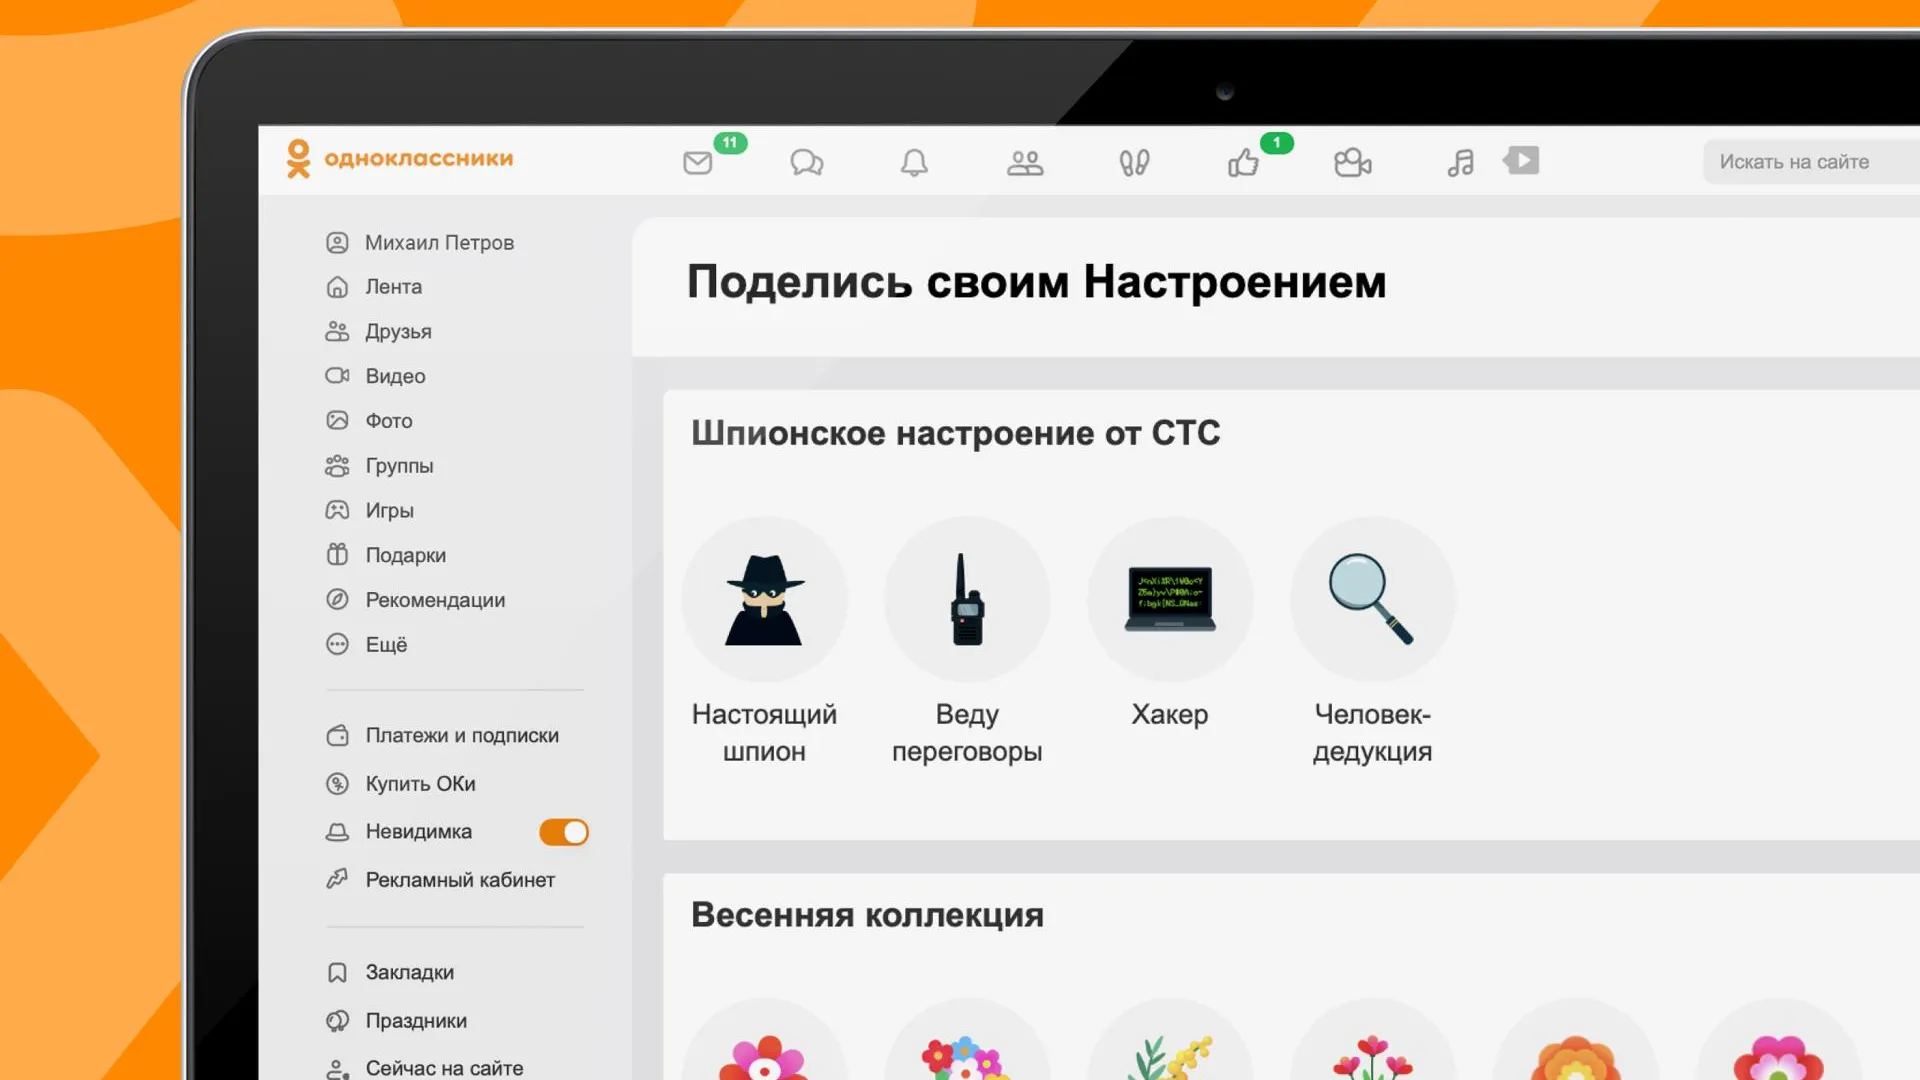 Соцсеть «Одноклассники» запустила новый сервис «Настроение»